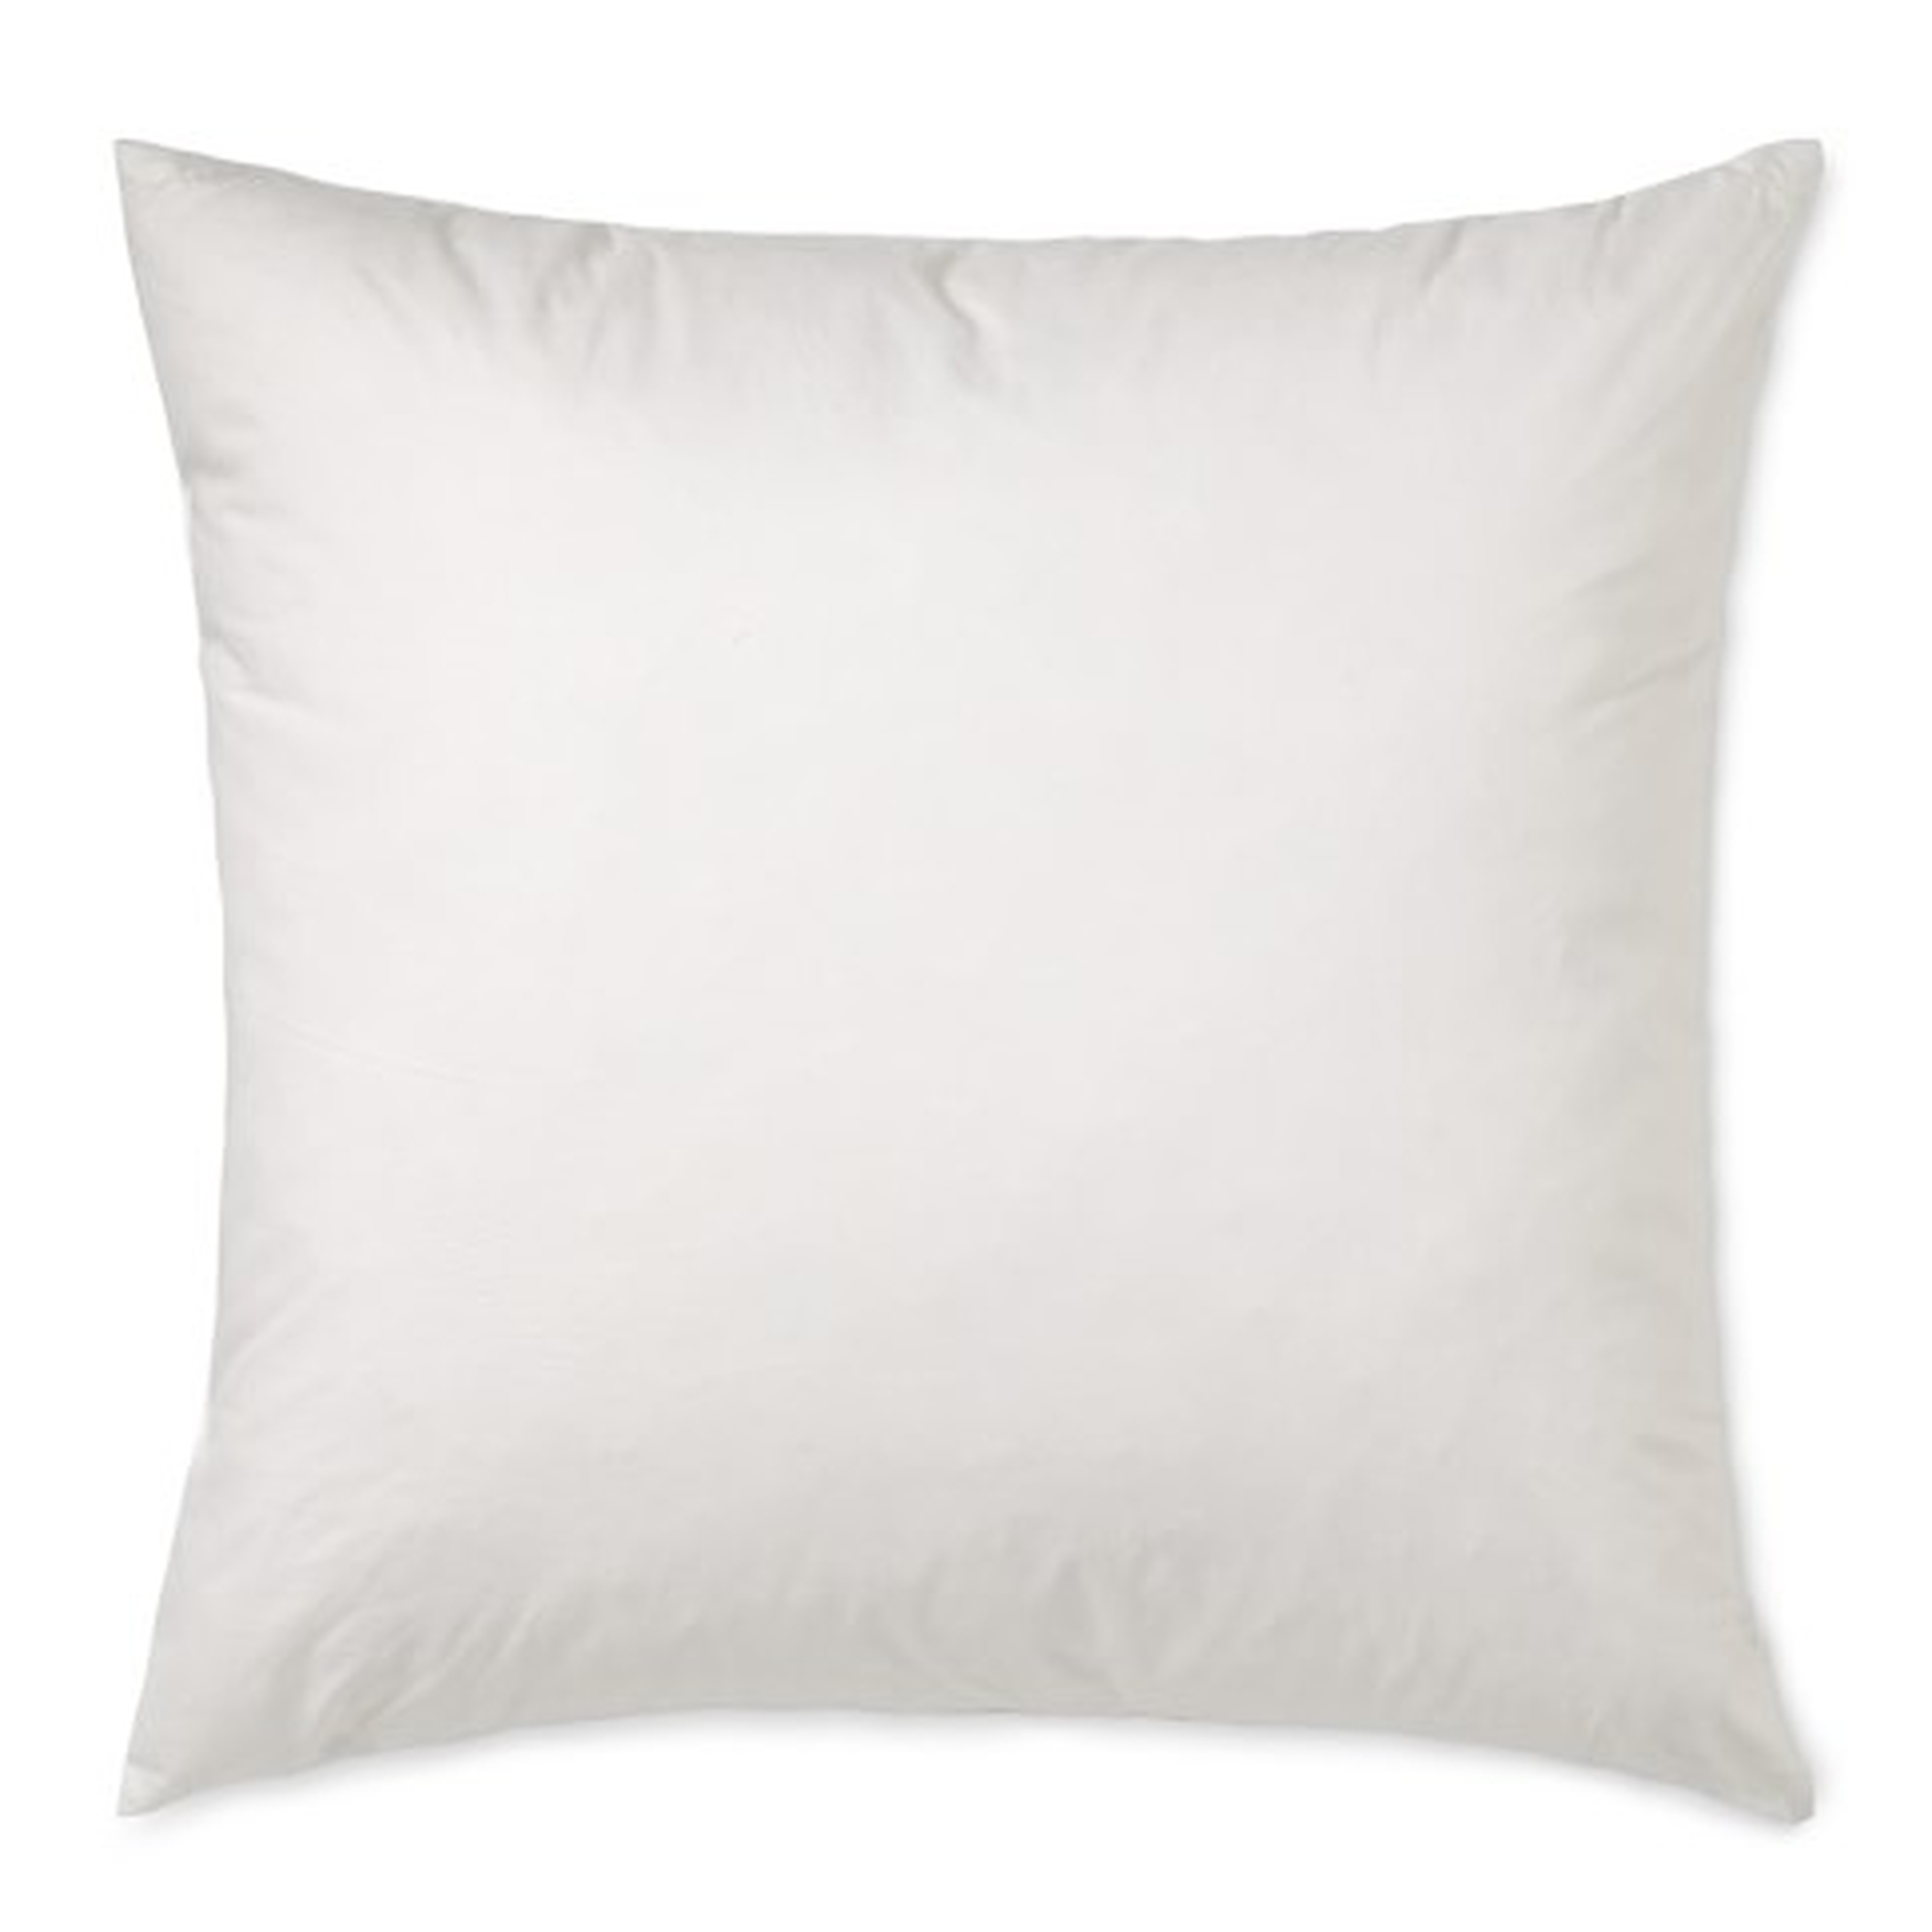 Williams-Sonoma Decorative Pillow Insert - 22" x 22" - Williams Sonoma Home